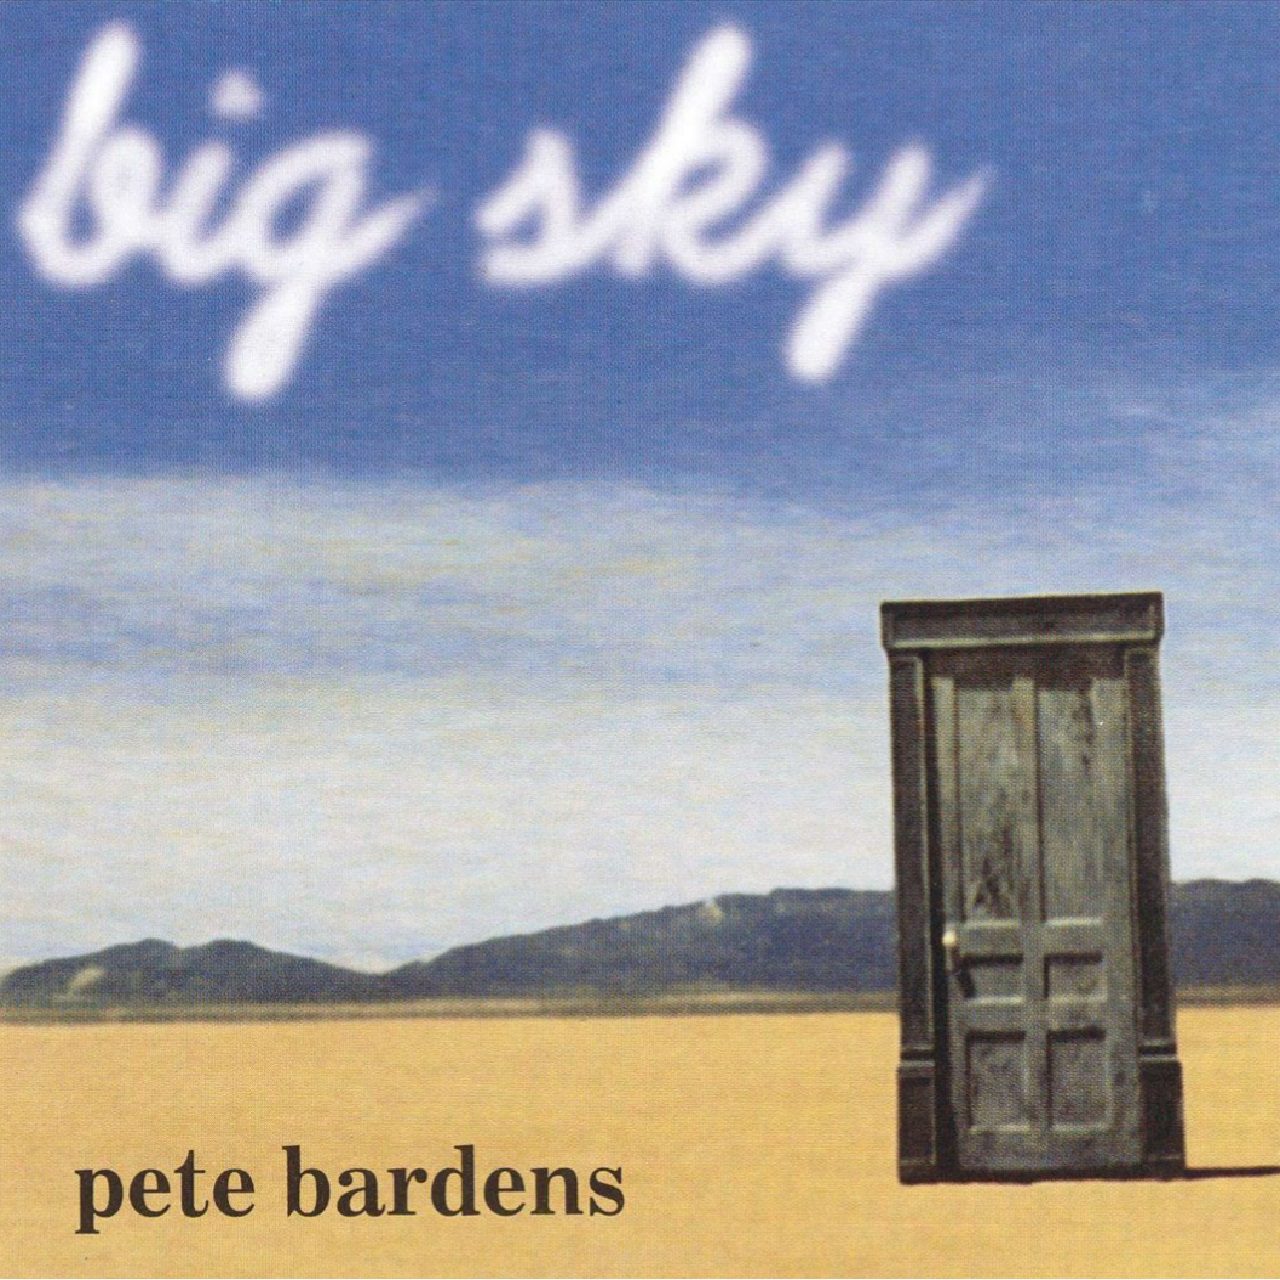 Pete Bardens – Big Sky cover album